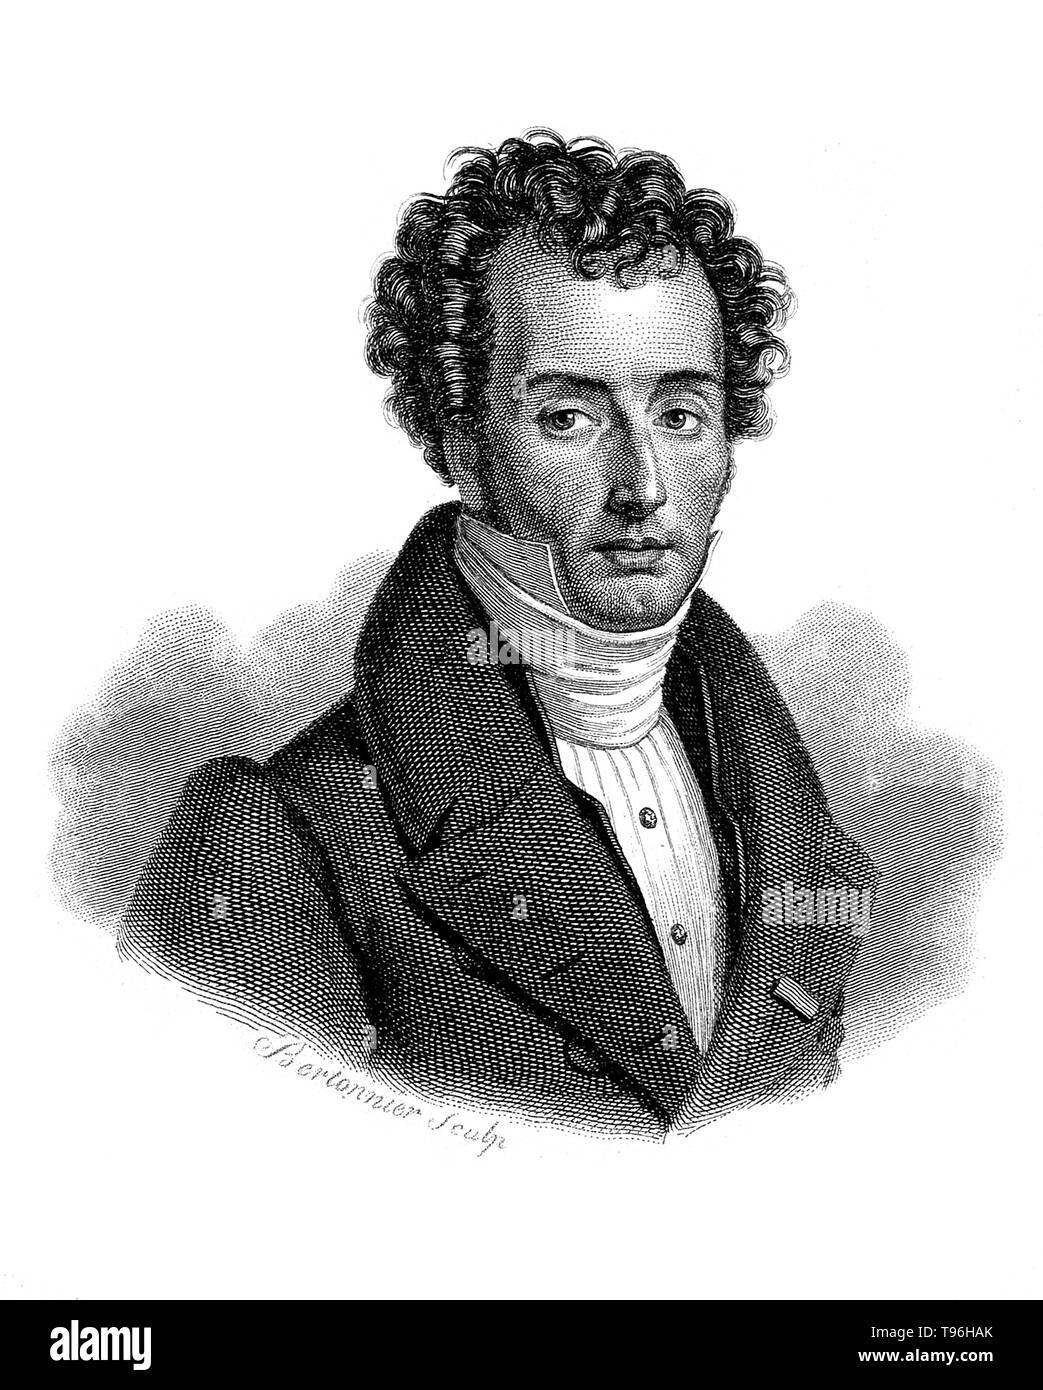 Mathieu Joseph Bonaventure Orfila (April 24, 1787 - März 12, 1853) war ein spanischer - Französische Toxikologe und Chemiker geboren, der Begründer der Wissenschaft der Toxikologie. In der Zeit Orfila des primären Art von Gift Arsen in Gebrauch war, aber es gab keine zuverlässige Methoden für das Testen für seine Anwesenheit. Orfila, neue Techniken und raffinierte vorhandene Techniken erstellt in seiner ersten Abhandlung, Traite des Gifte, deren Genauigkeit zu erhöhen. Er starb 1853 im Alter von 65 Jahren. Zeile Gravur von S. F. Bertonnier, undatiert. Stockfoto